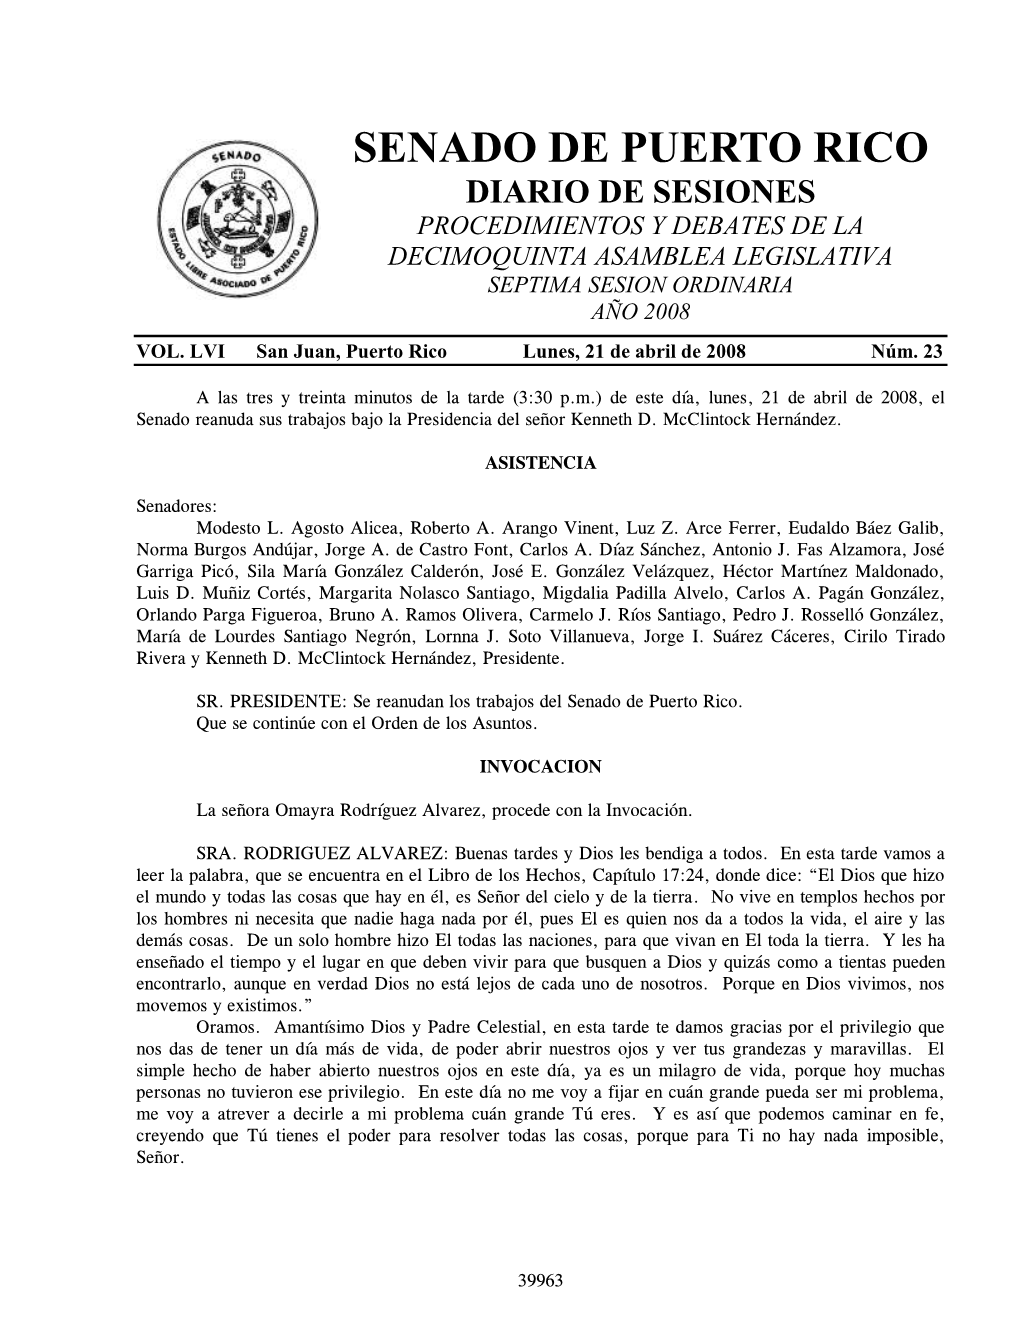 Procedimientos Y Debates De La Decimoquinta Asamblea Legislativa Septima Sesion Ordinaria Año 2008 Vol